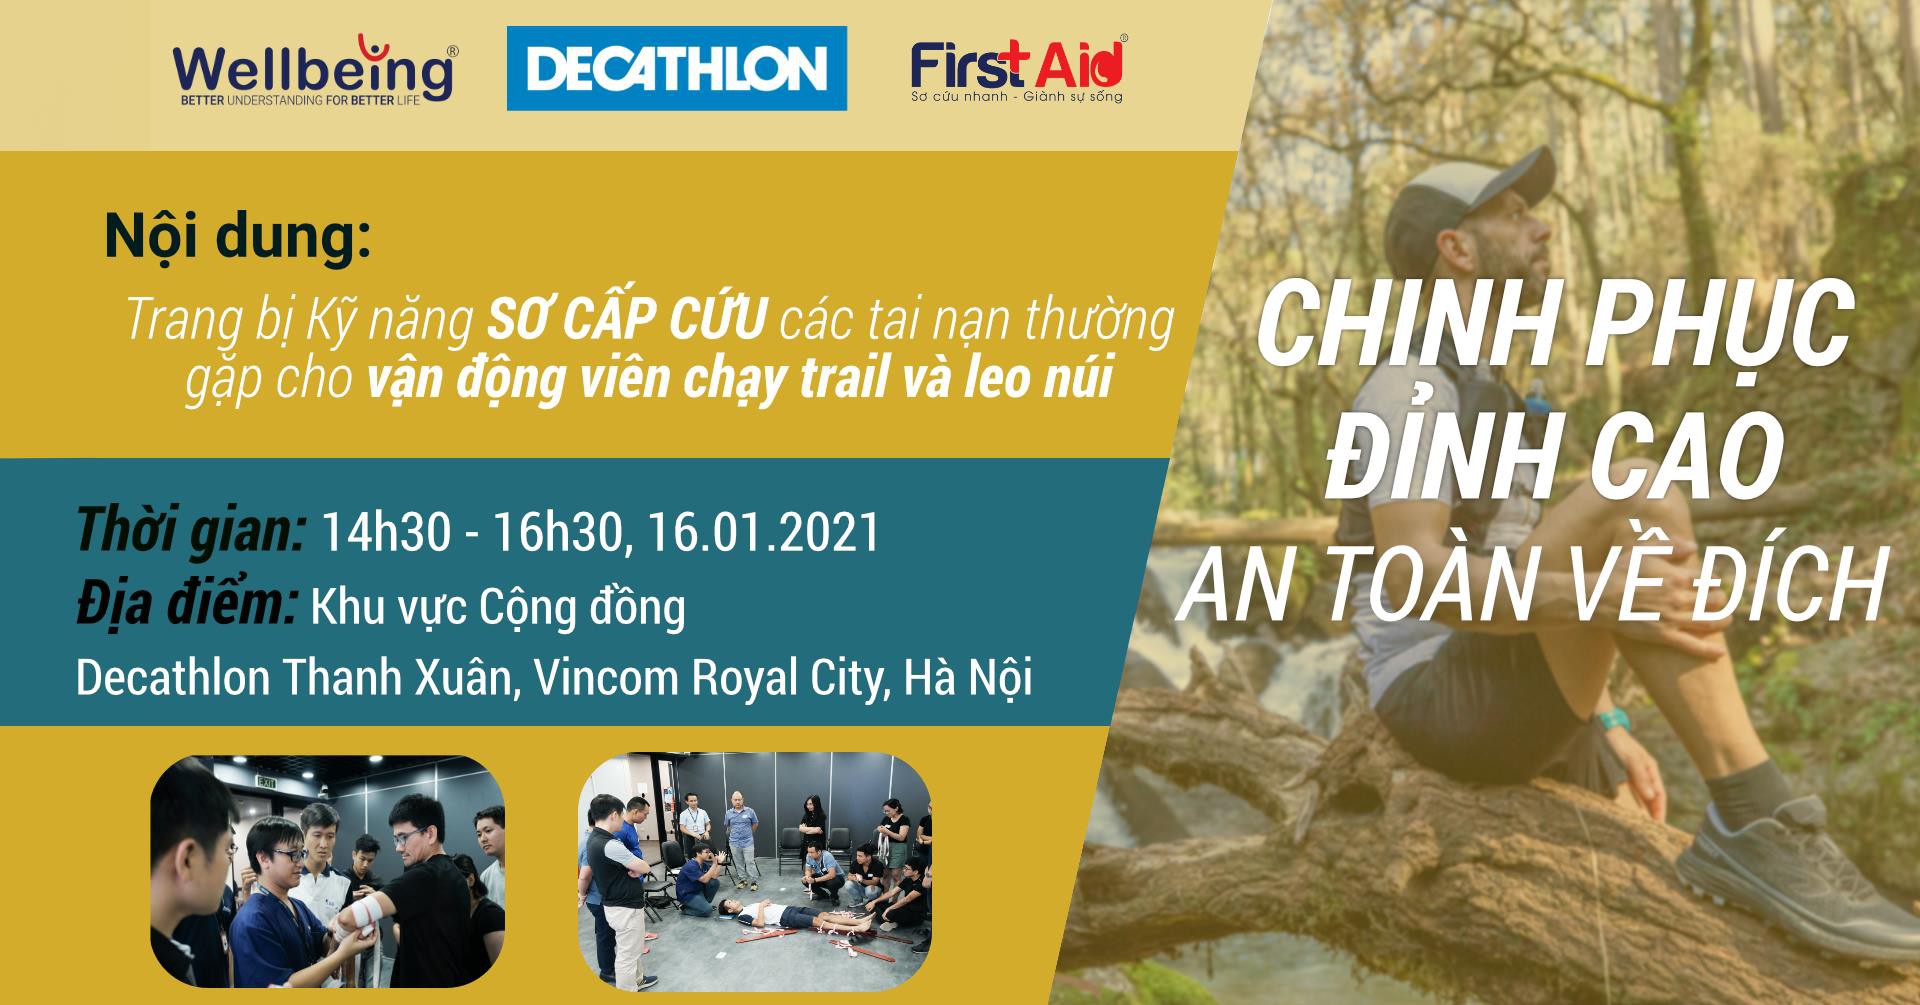 Decathlon x Wellbeing CHINH PHỤC ĐỈNH CAO - AN TOÀN VỀ ĐÍCH